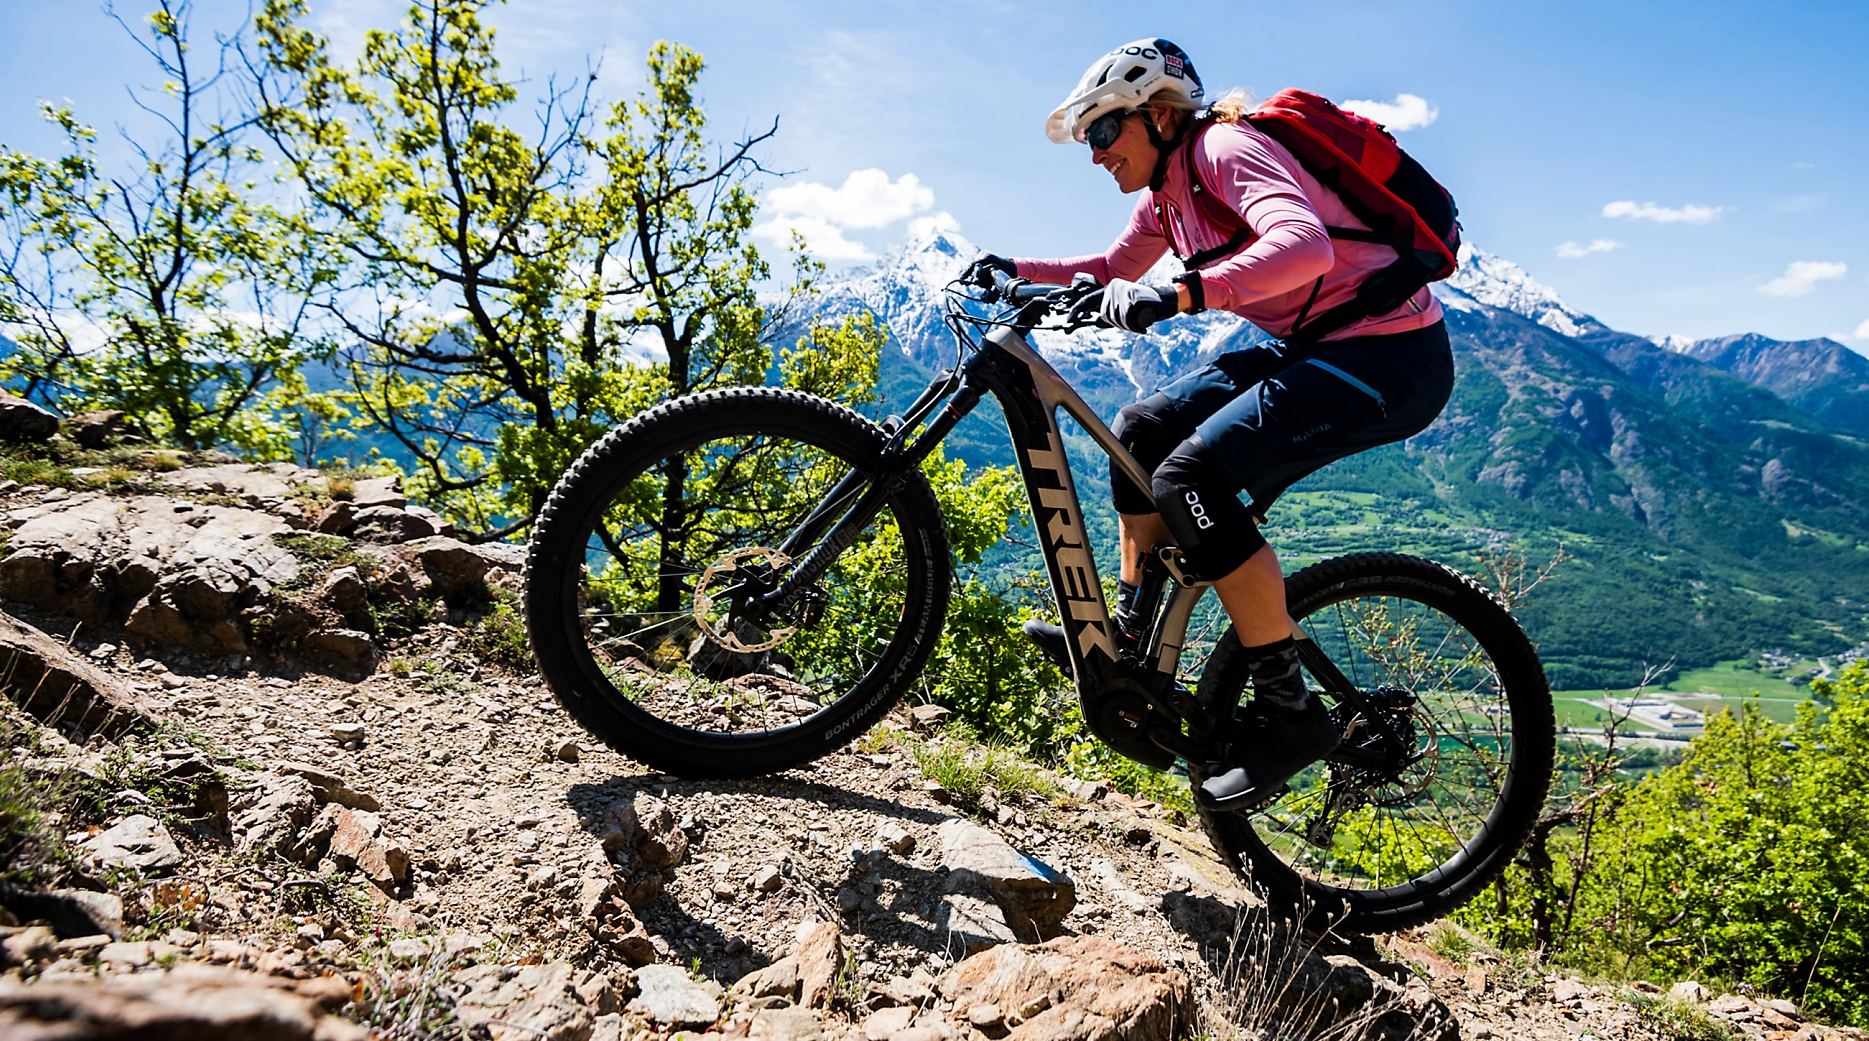 Are Trek mountain bikes good?